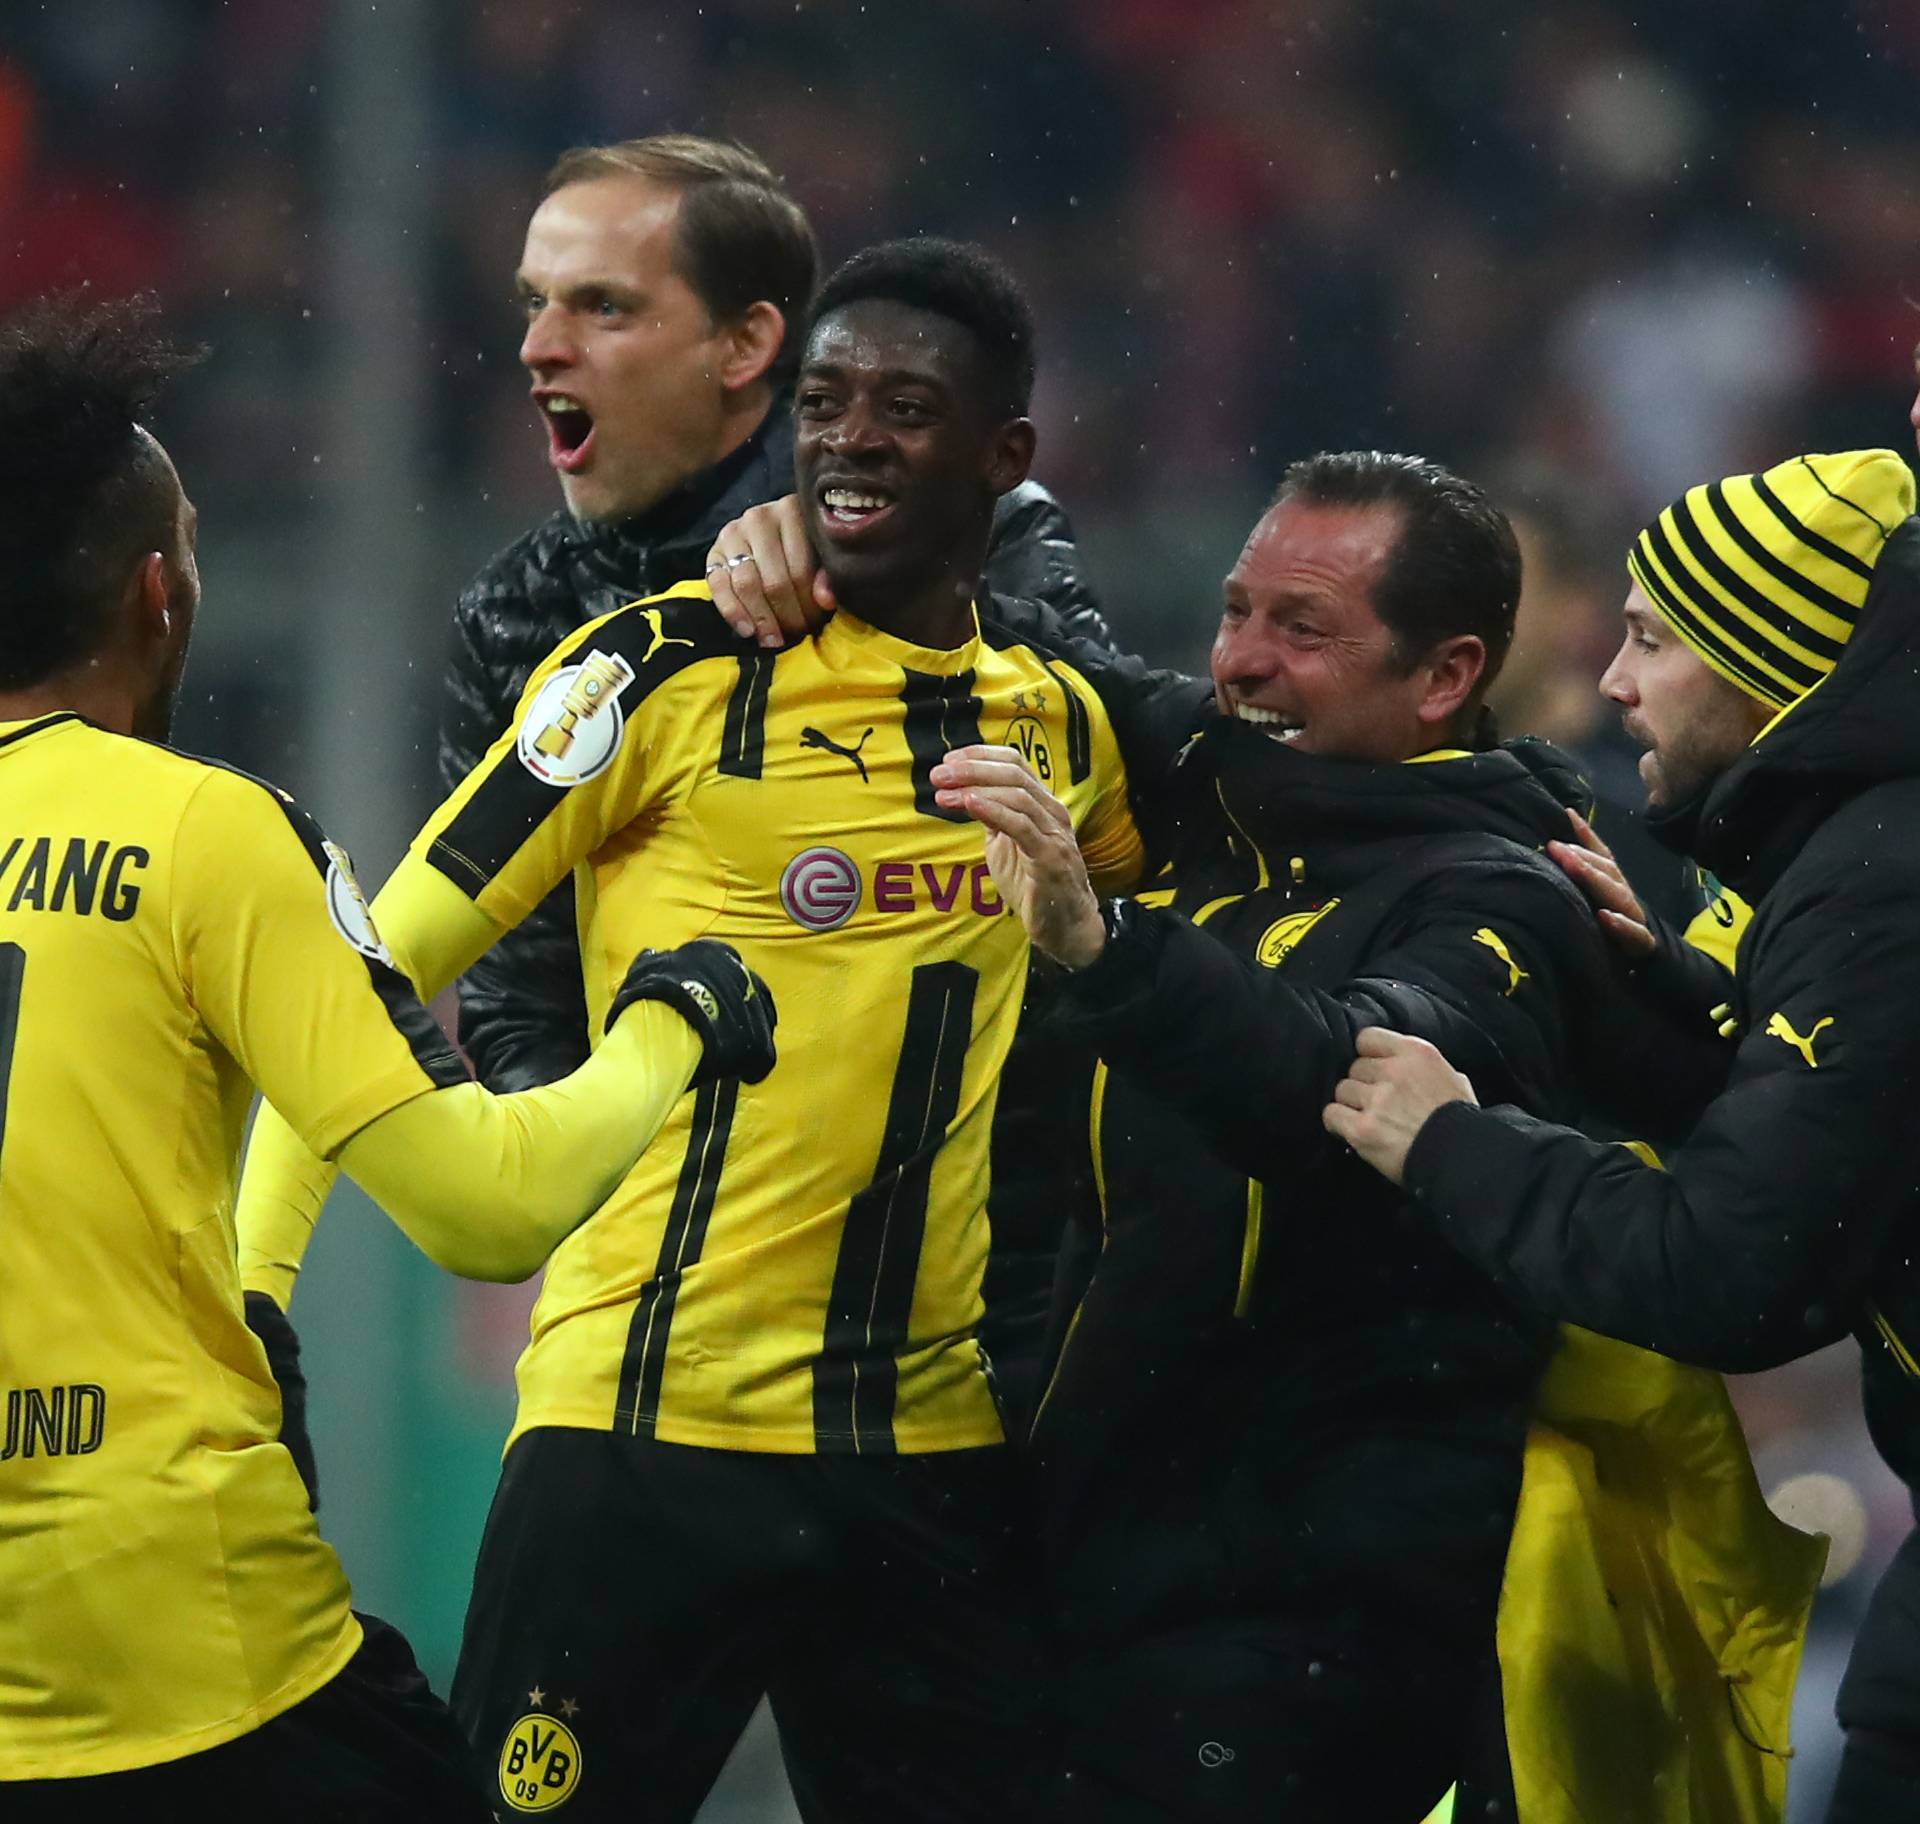 Borussia Dortmund's Ousmane Dembele celebrates scoring their third goal with coach Thomas Tuchel and coaching staff